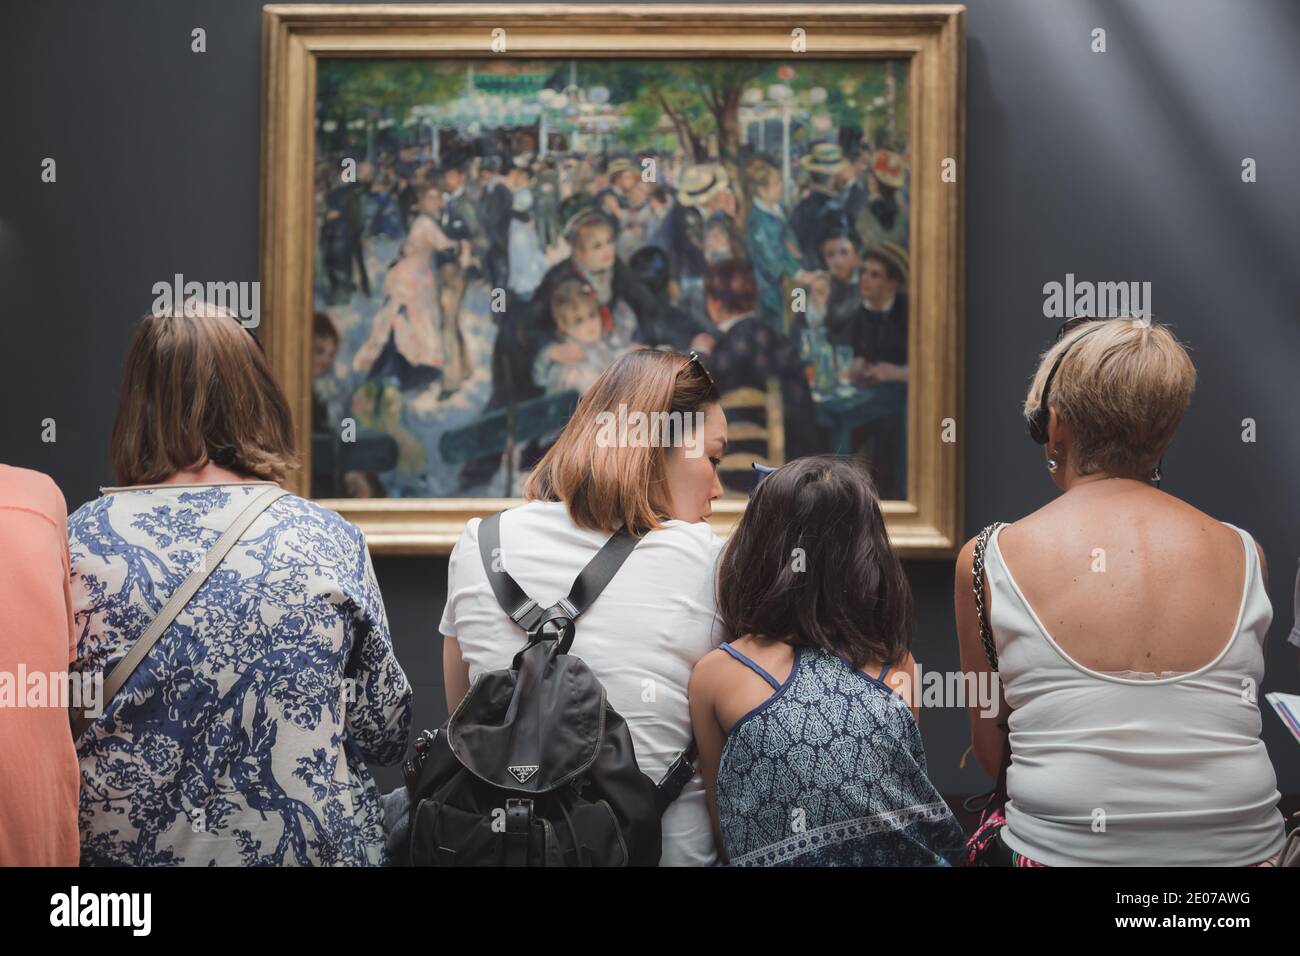 Parigi, Francia - 22 agosto 2015: I visitatori del Musee d'Orsay guardano al famoso capolavoro di Renoir "Bal du moulin de la Galette" Foto Stock